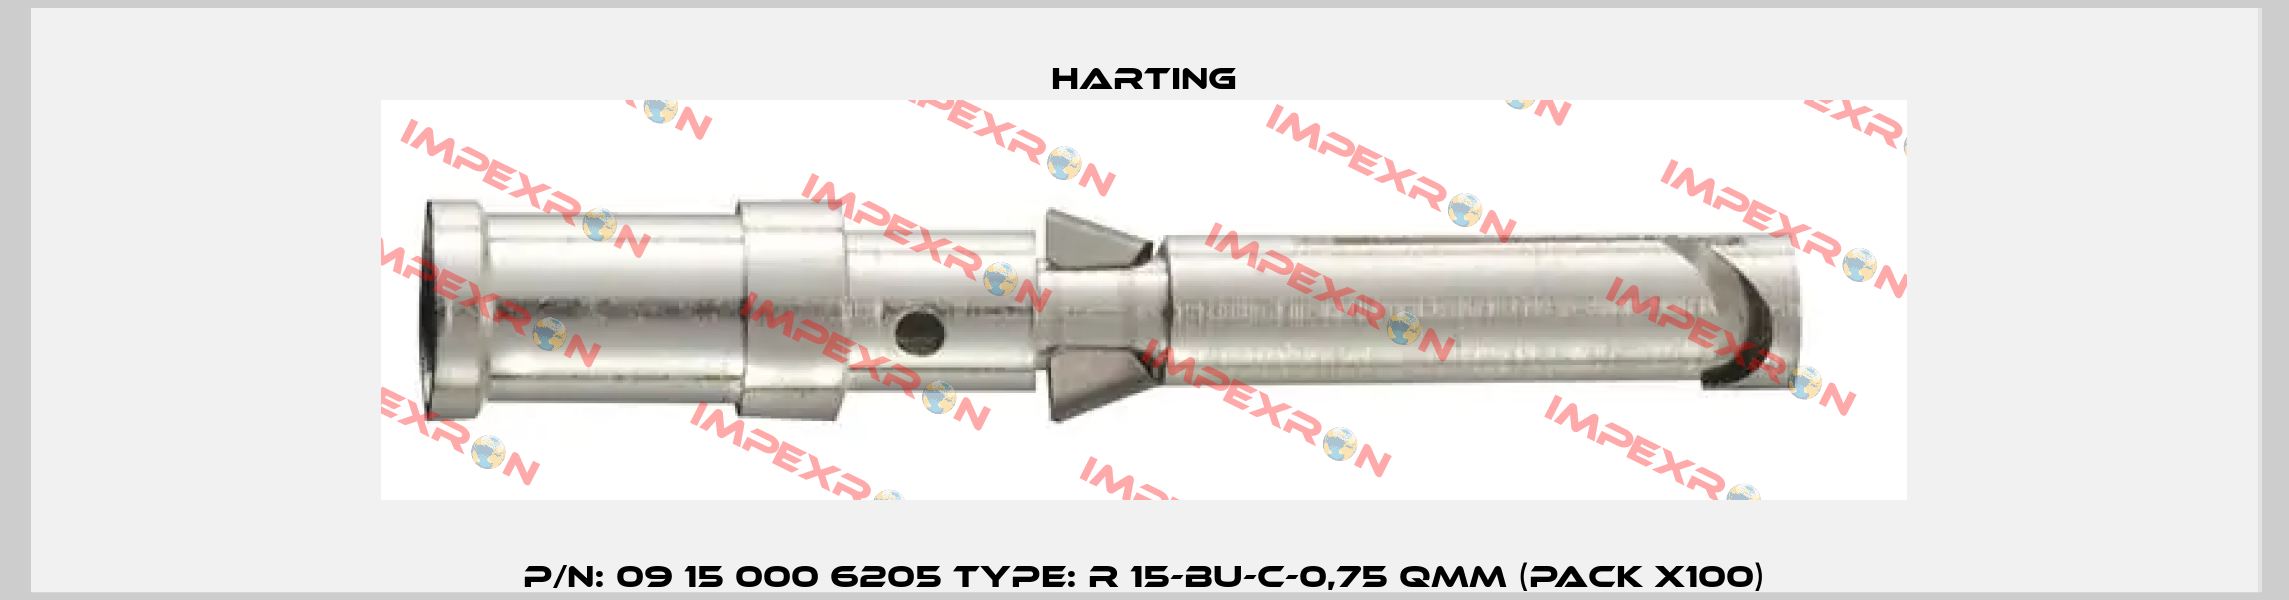 P/N: 09 15 000 6205 Type: R 15-BU-C-0,75 QMM (pack x100) Harting